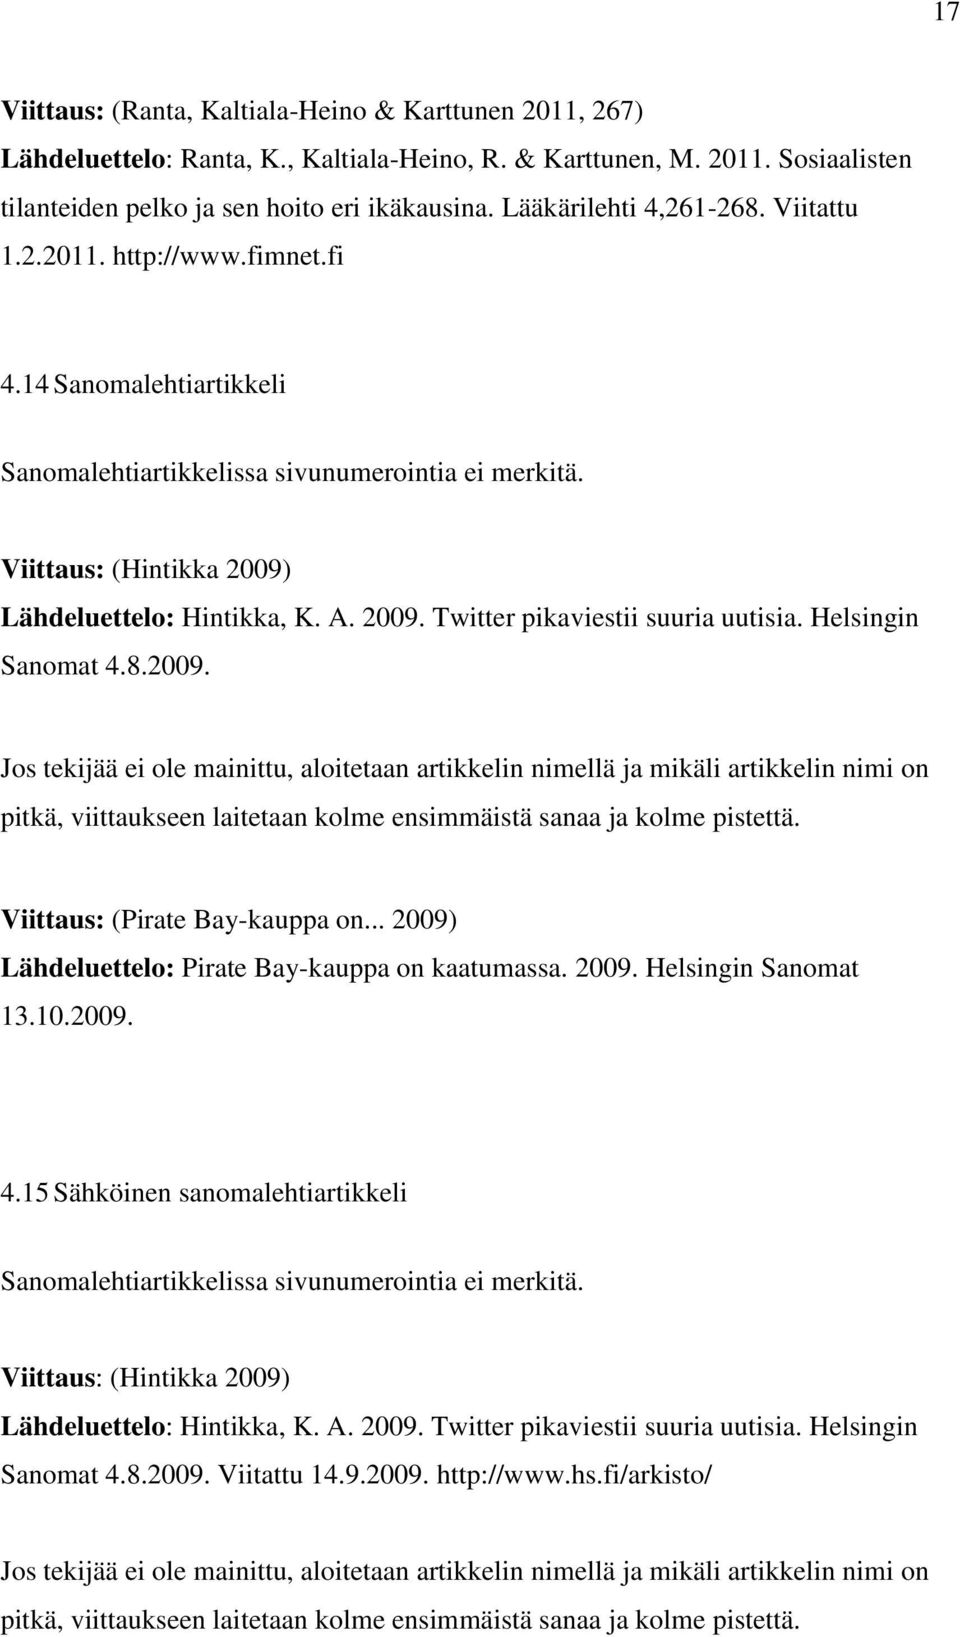 2009. Twitter pikaviestii suuria uutisia. Helsingin Sanomat 4.8.2009. Jos tekijää ei ole mainittu, aloitetaan artikkelin nimellä ja mikäli artikkelin nimi on pitkä, viittaukseen laitetaan kolme ensimmäistä sanaa ja kolme pistettä.